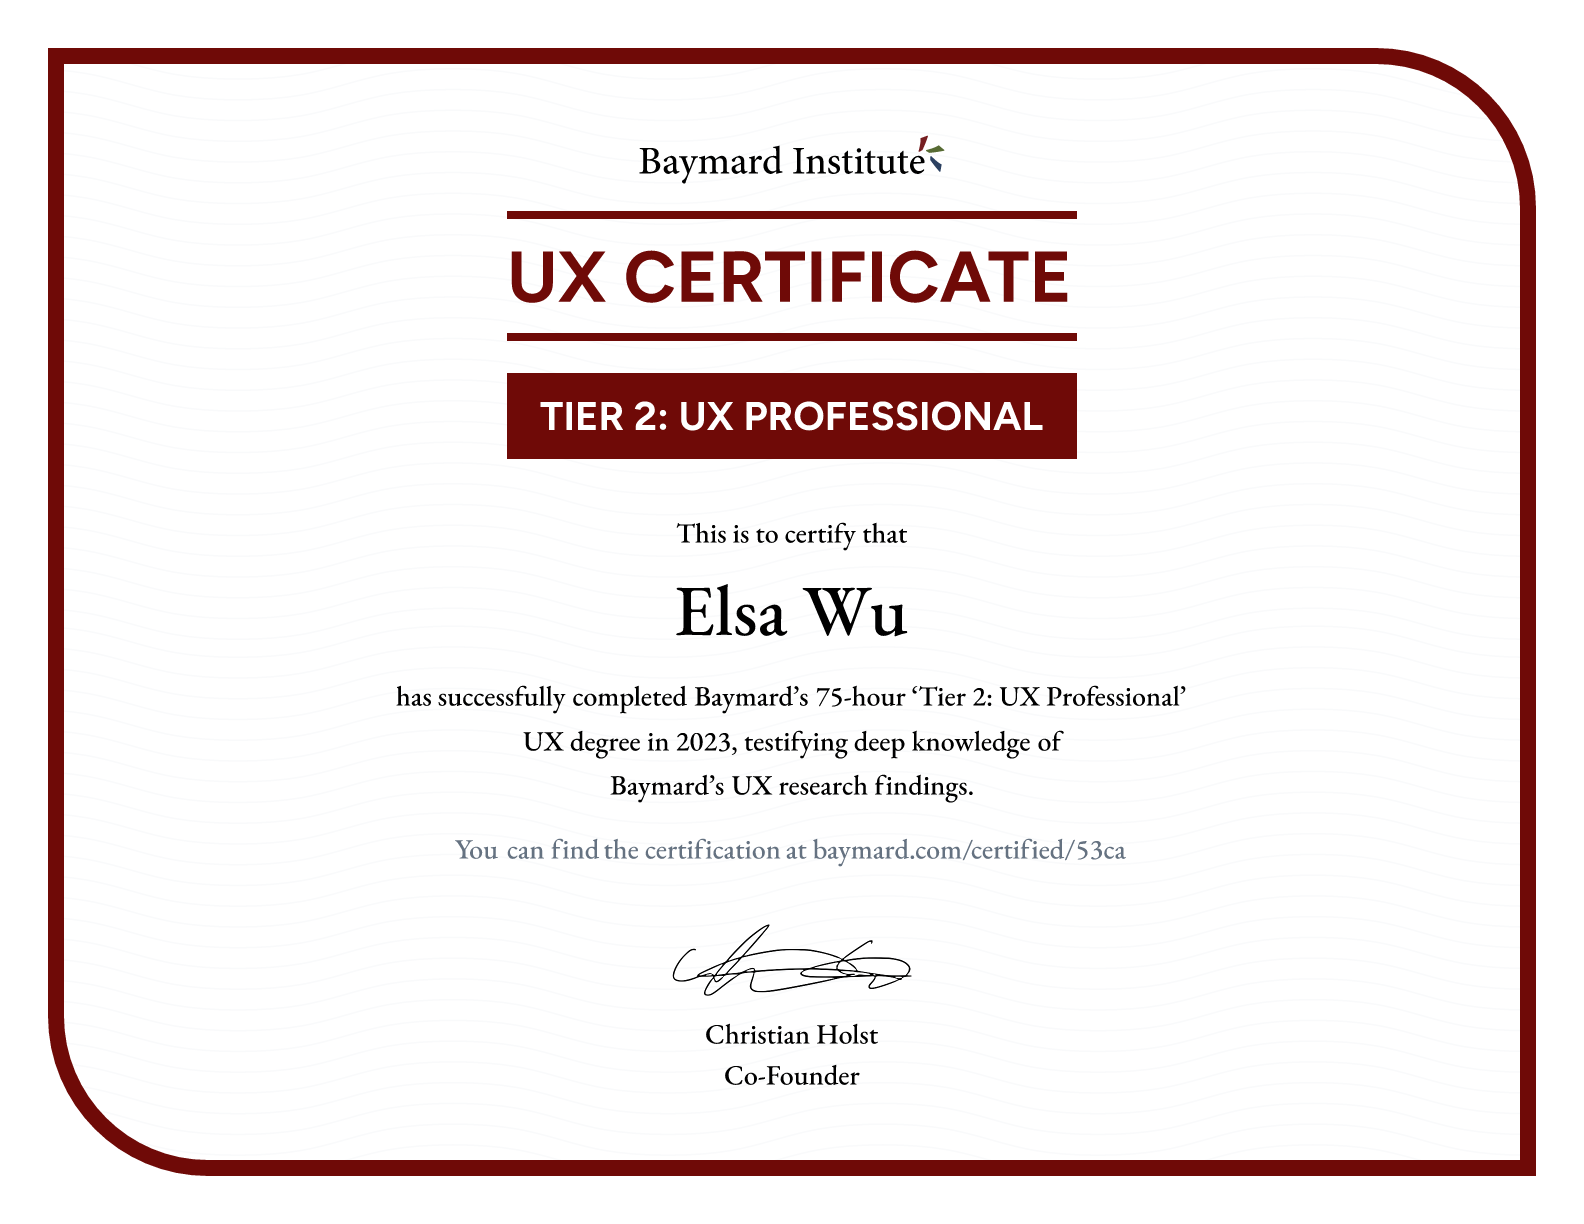 Elsa Wu’s certificate